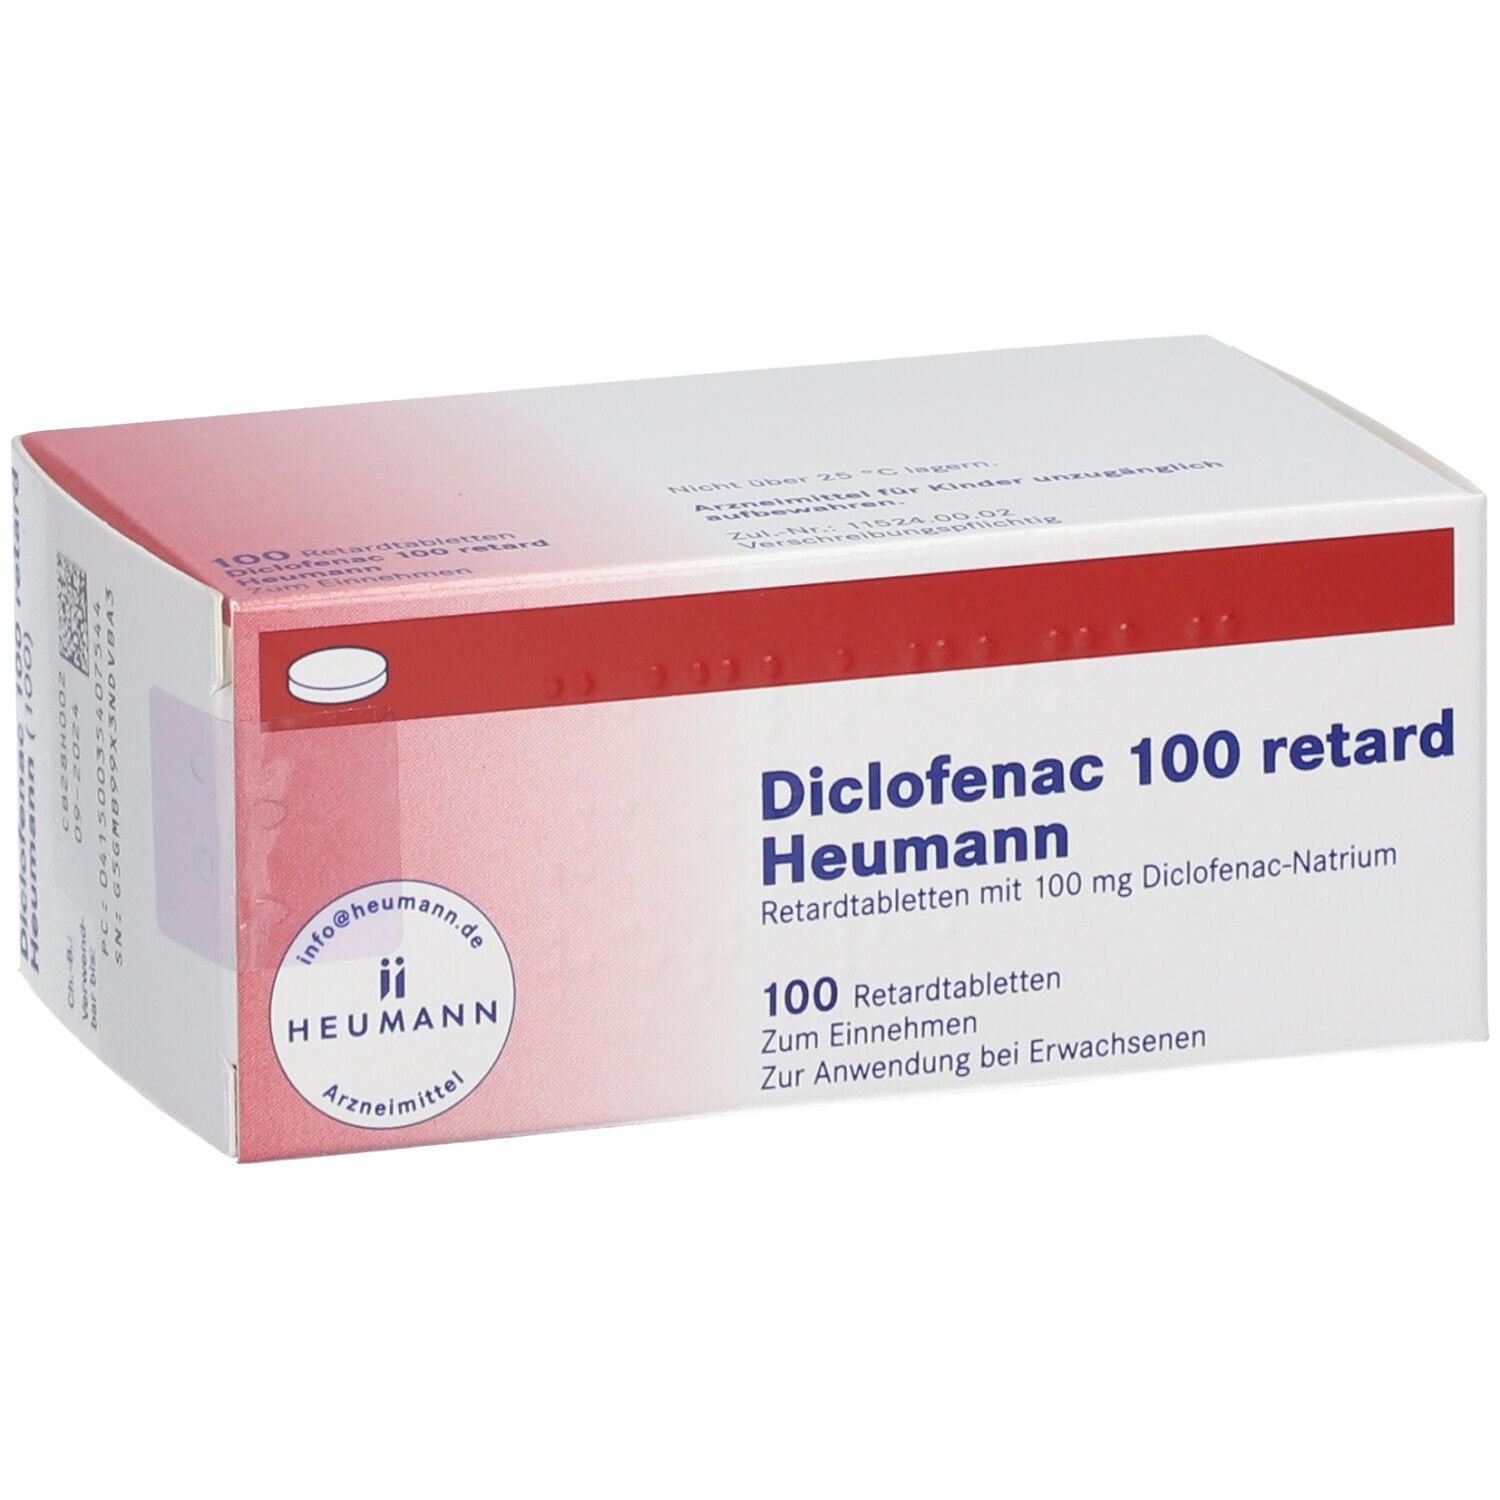 Diclofenac 100 retard Heumann